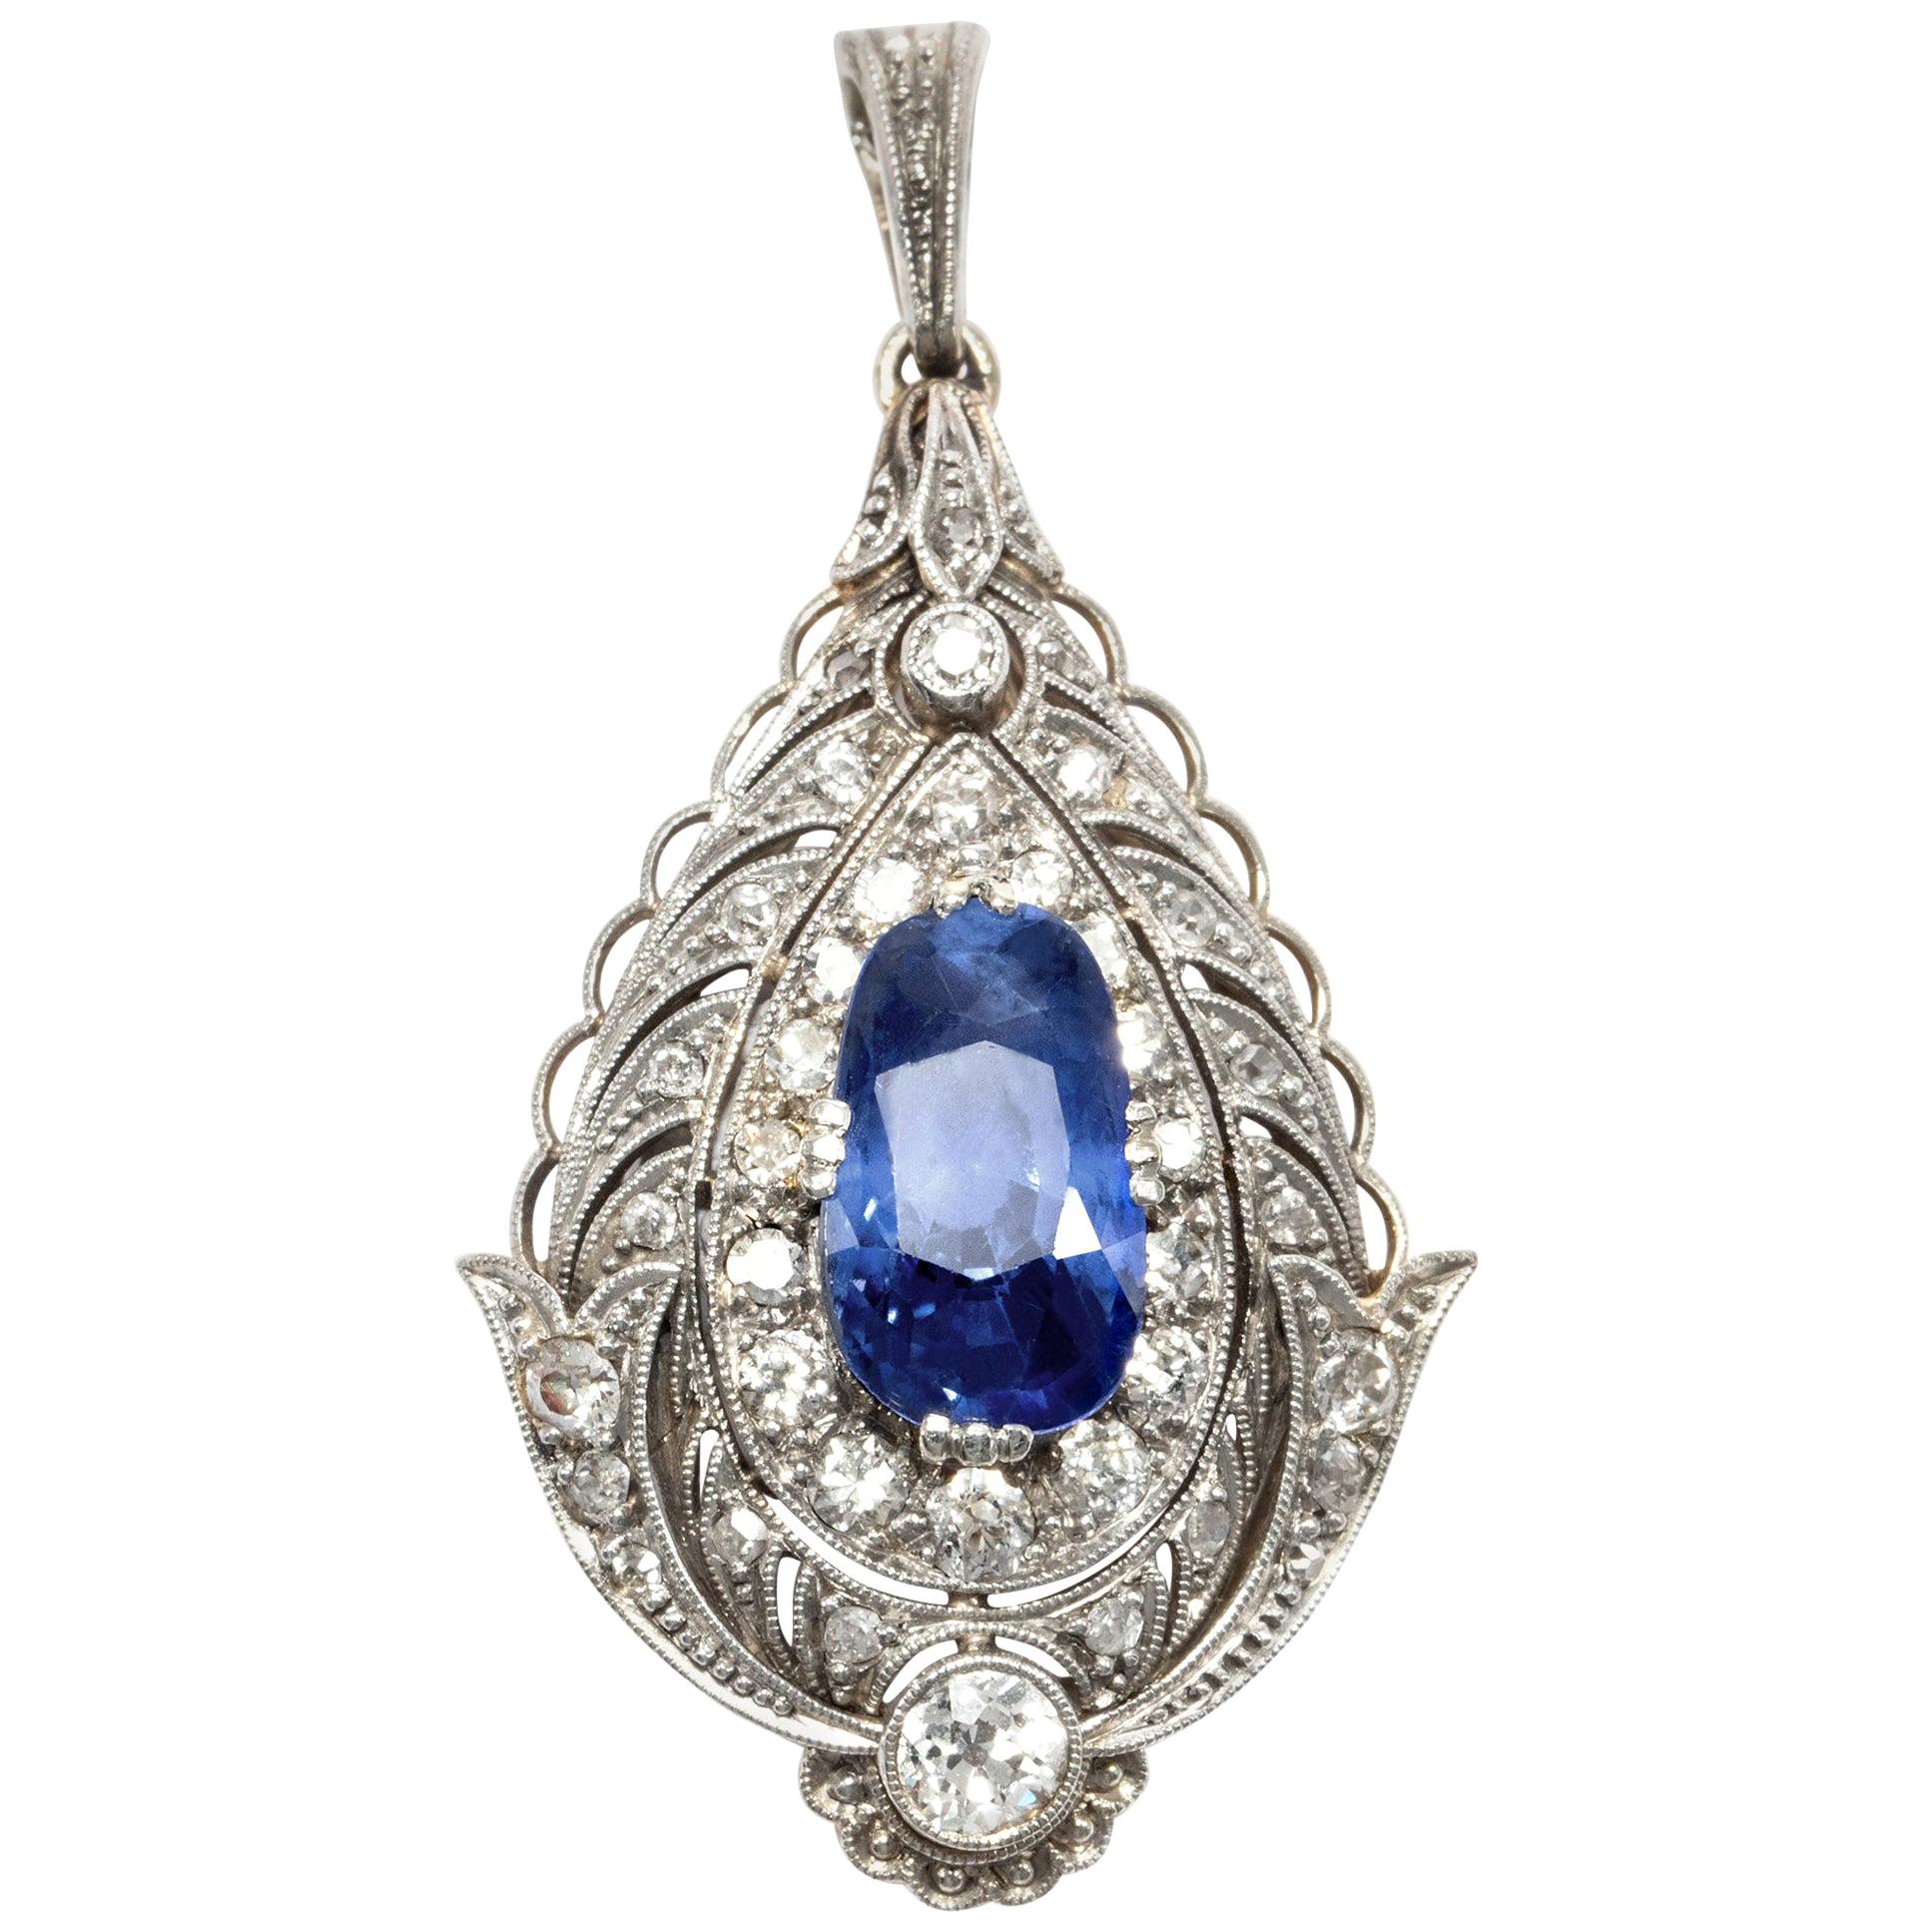 Belle Époque/Edwardian circa 1910, 4.4 Ct No Heat Blue Sapphire Diamond Pendant